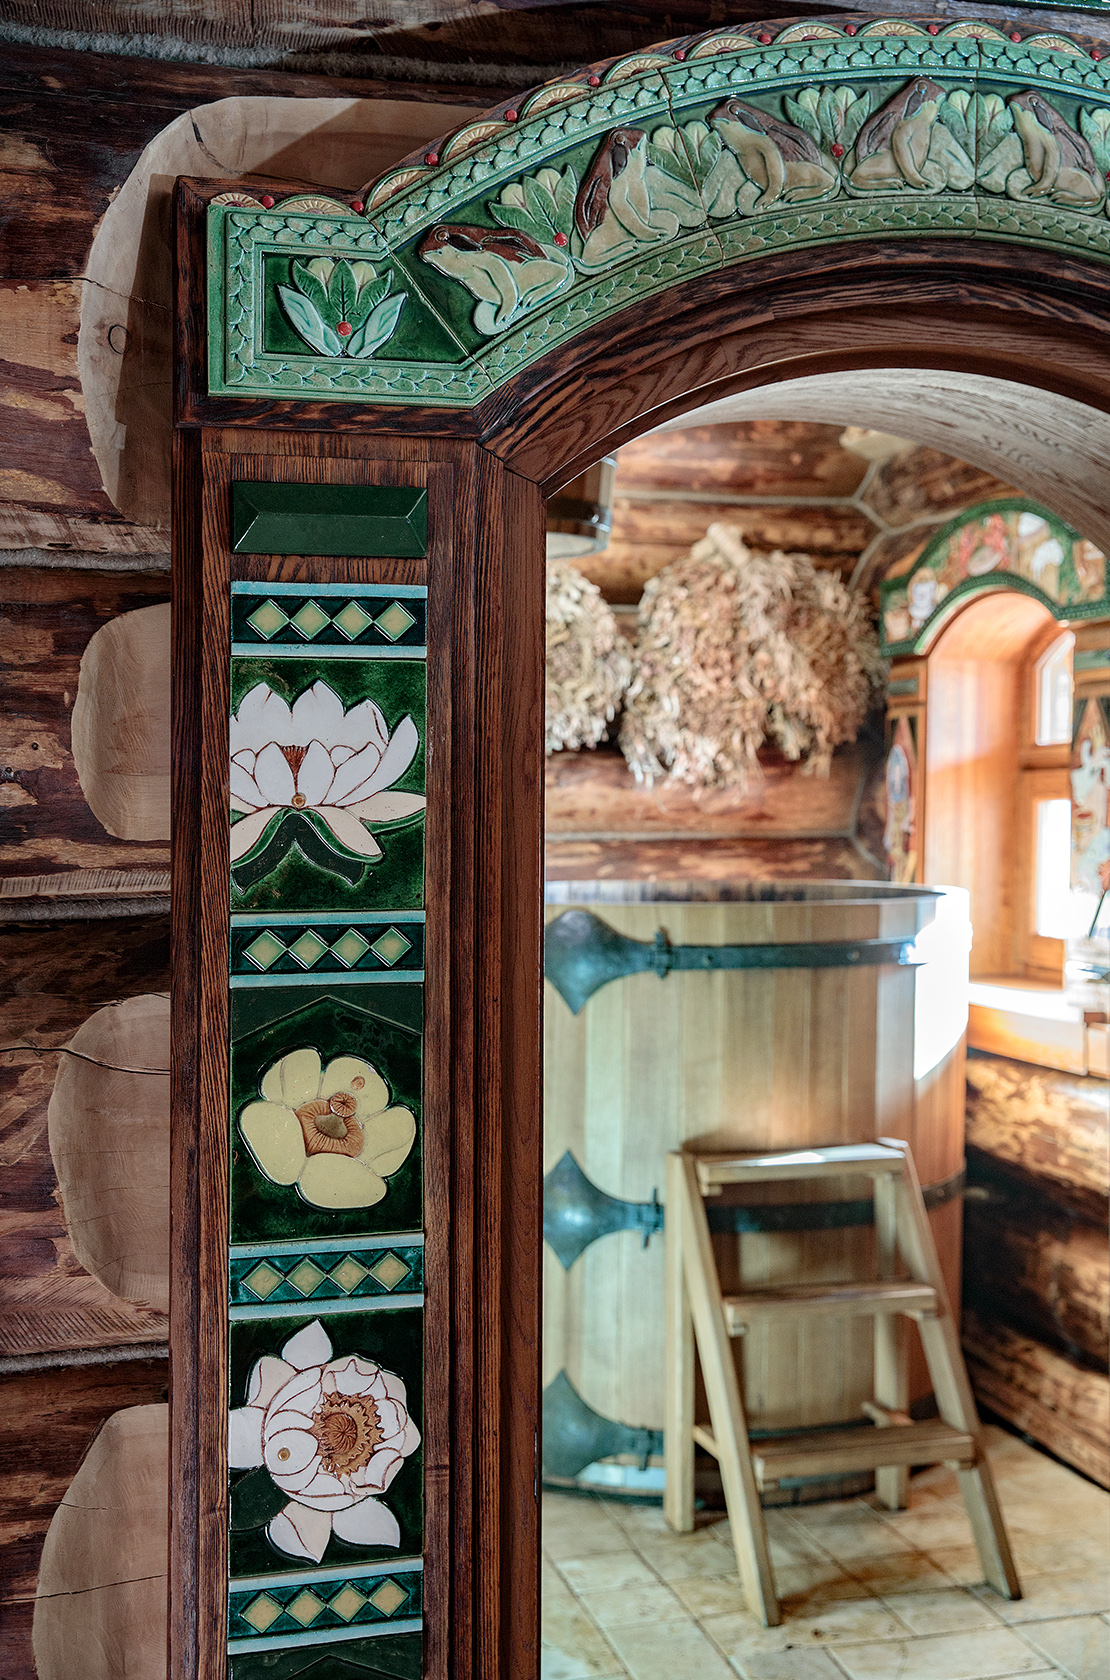 Дверные наличники с керамическими вставками с изображением кувшинок и лягушек, изготовленные Kovalev ceramics, для кедровой бани, в кедровой бане